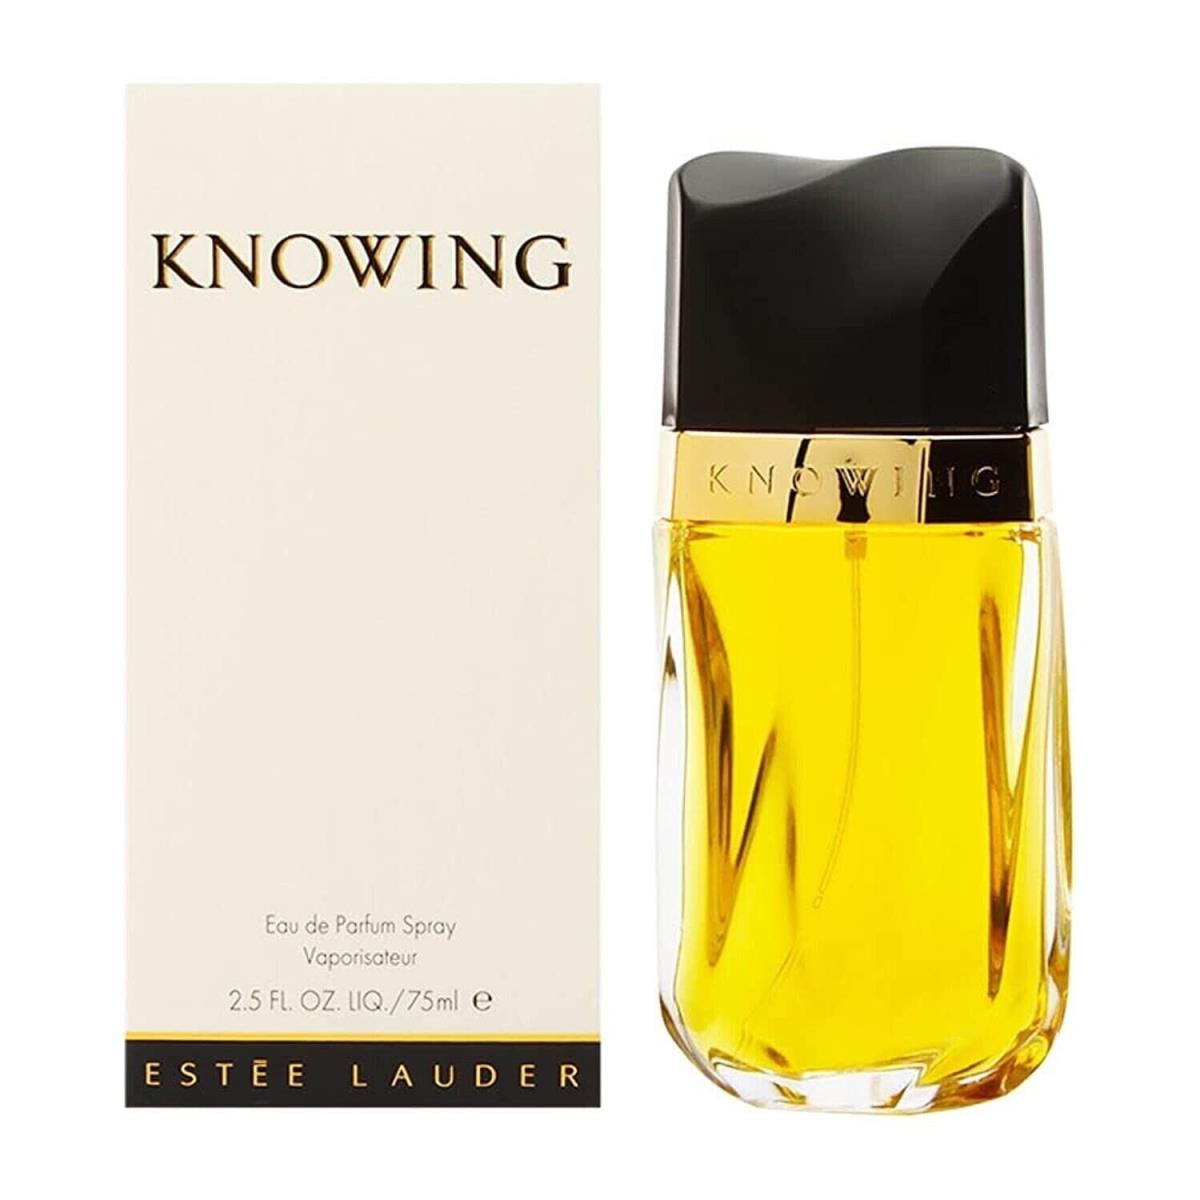 Knowing by Estee Lauder 2.5 oz Eau de Parfum Spray